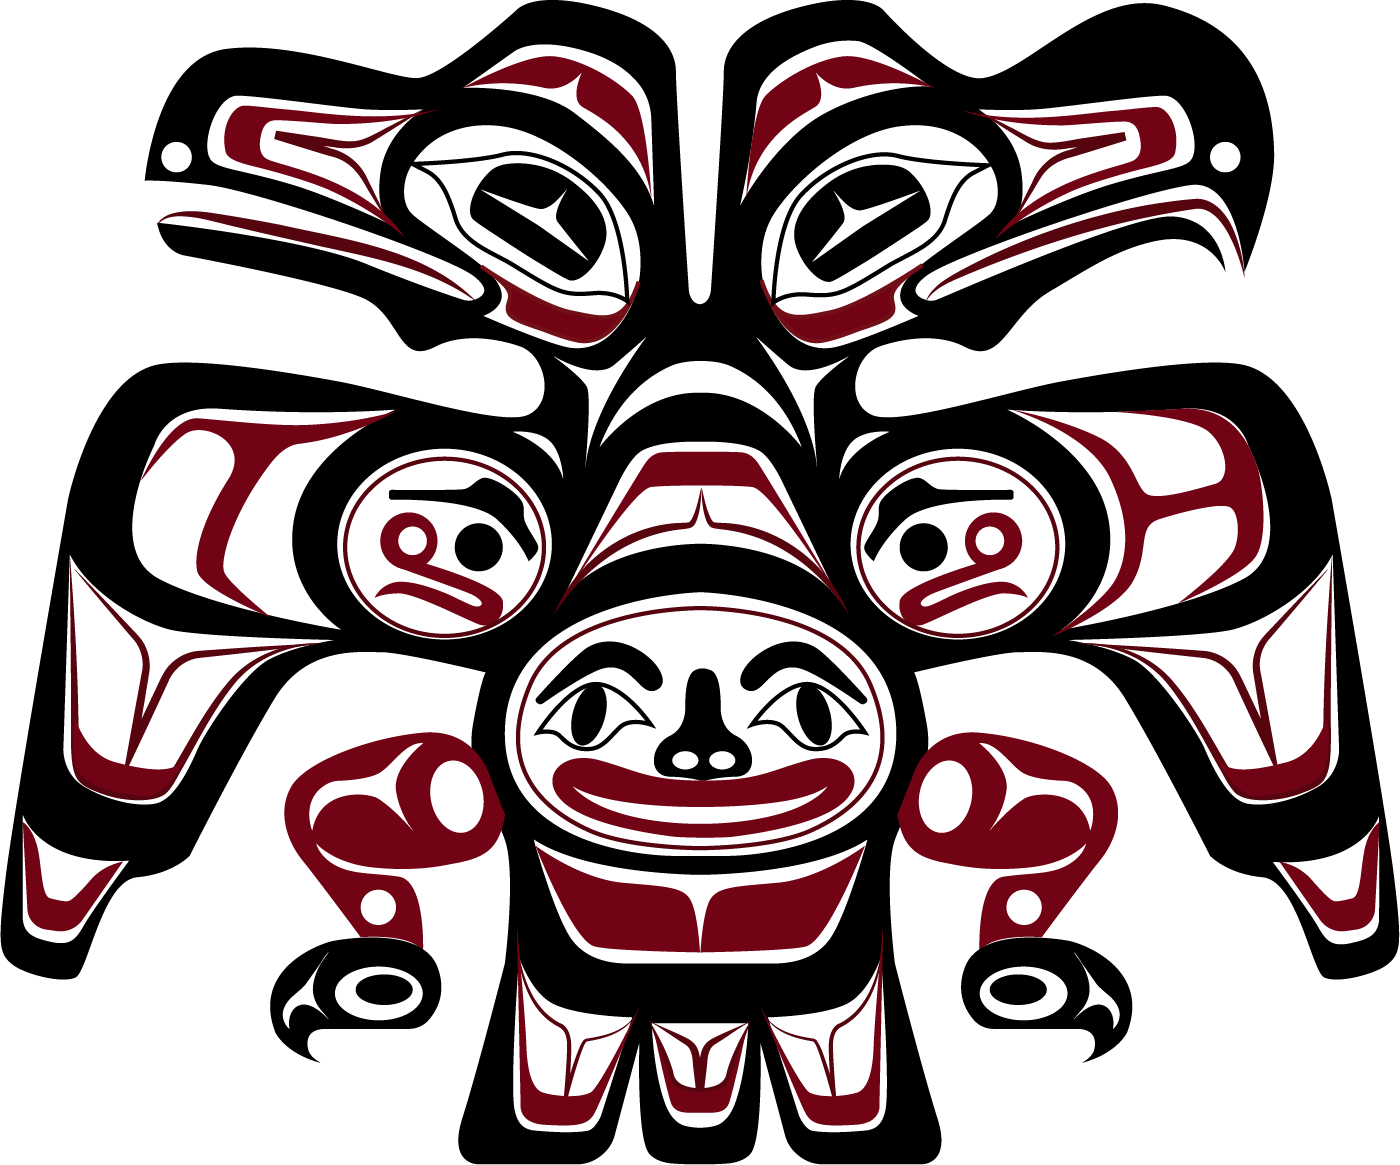 Tlingit & Haida WA Chapter